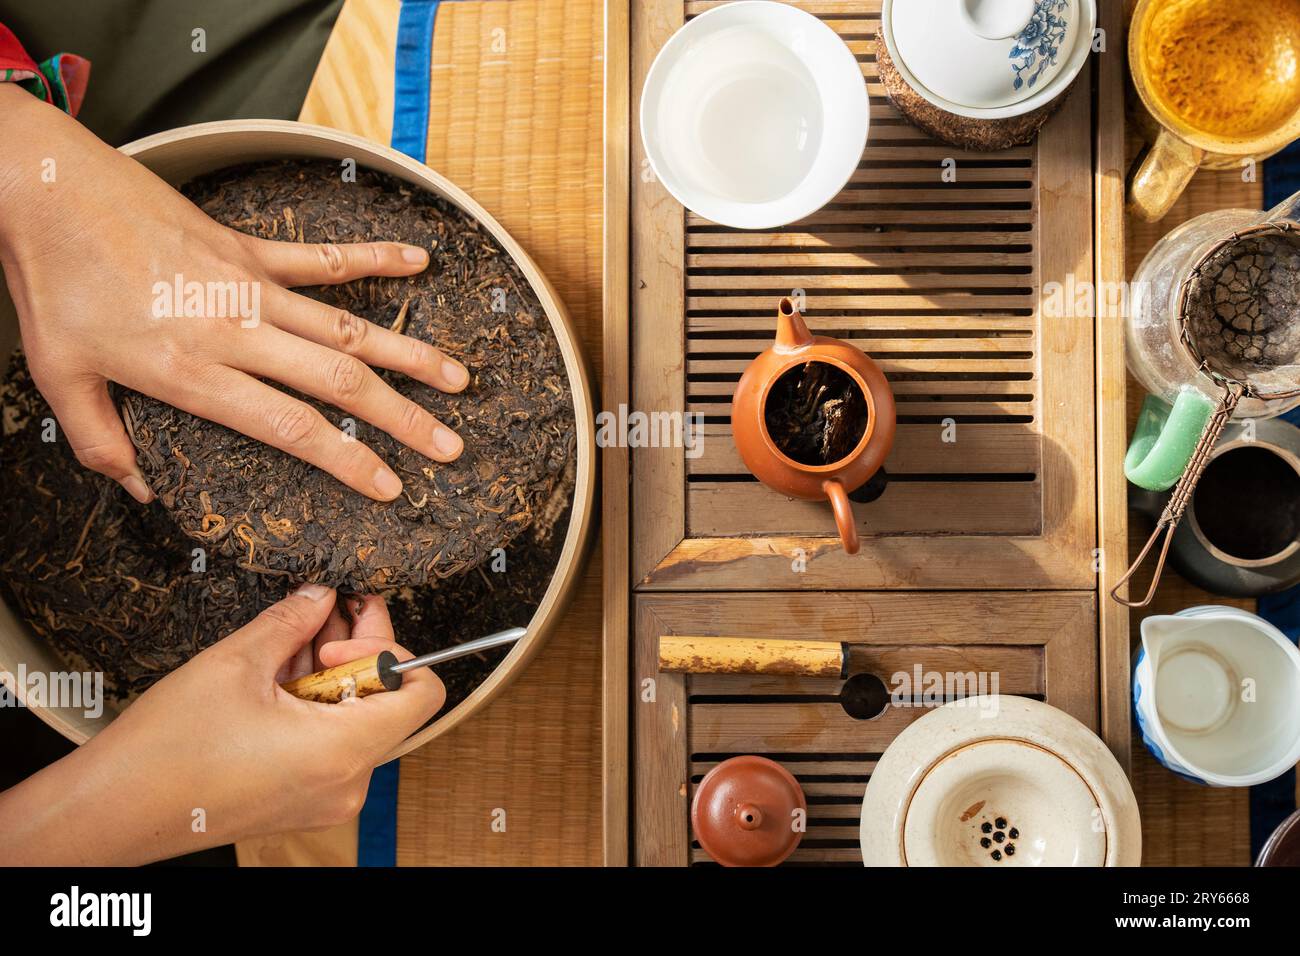 Frau, die fermentierten Tee zubereitet, umgeben von Töpfen und Tassen Stockfoto